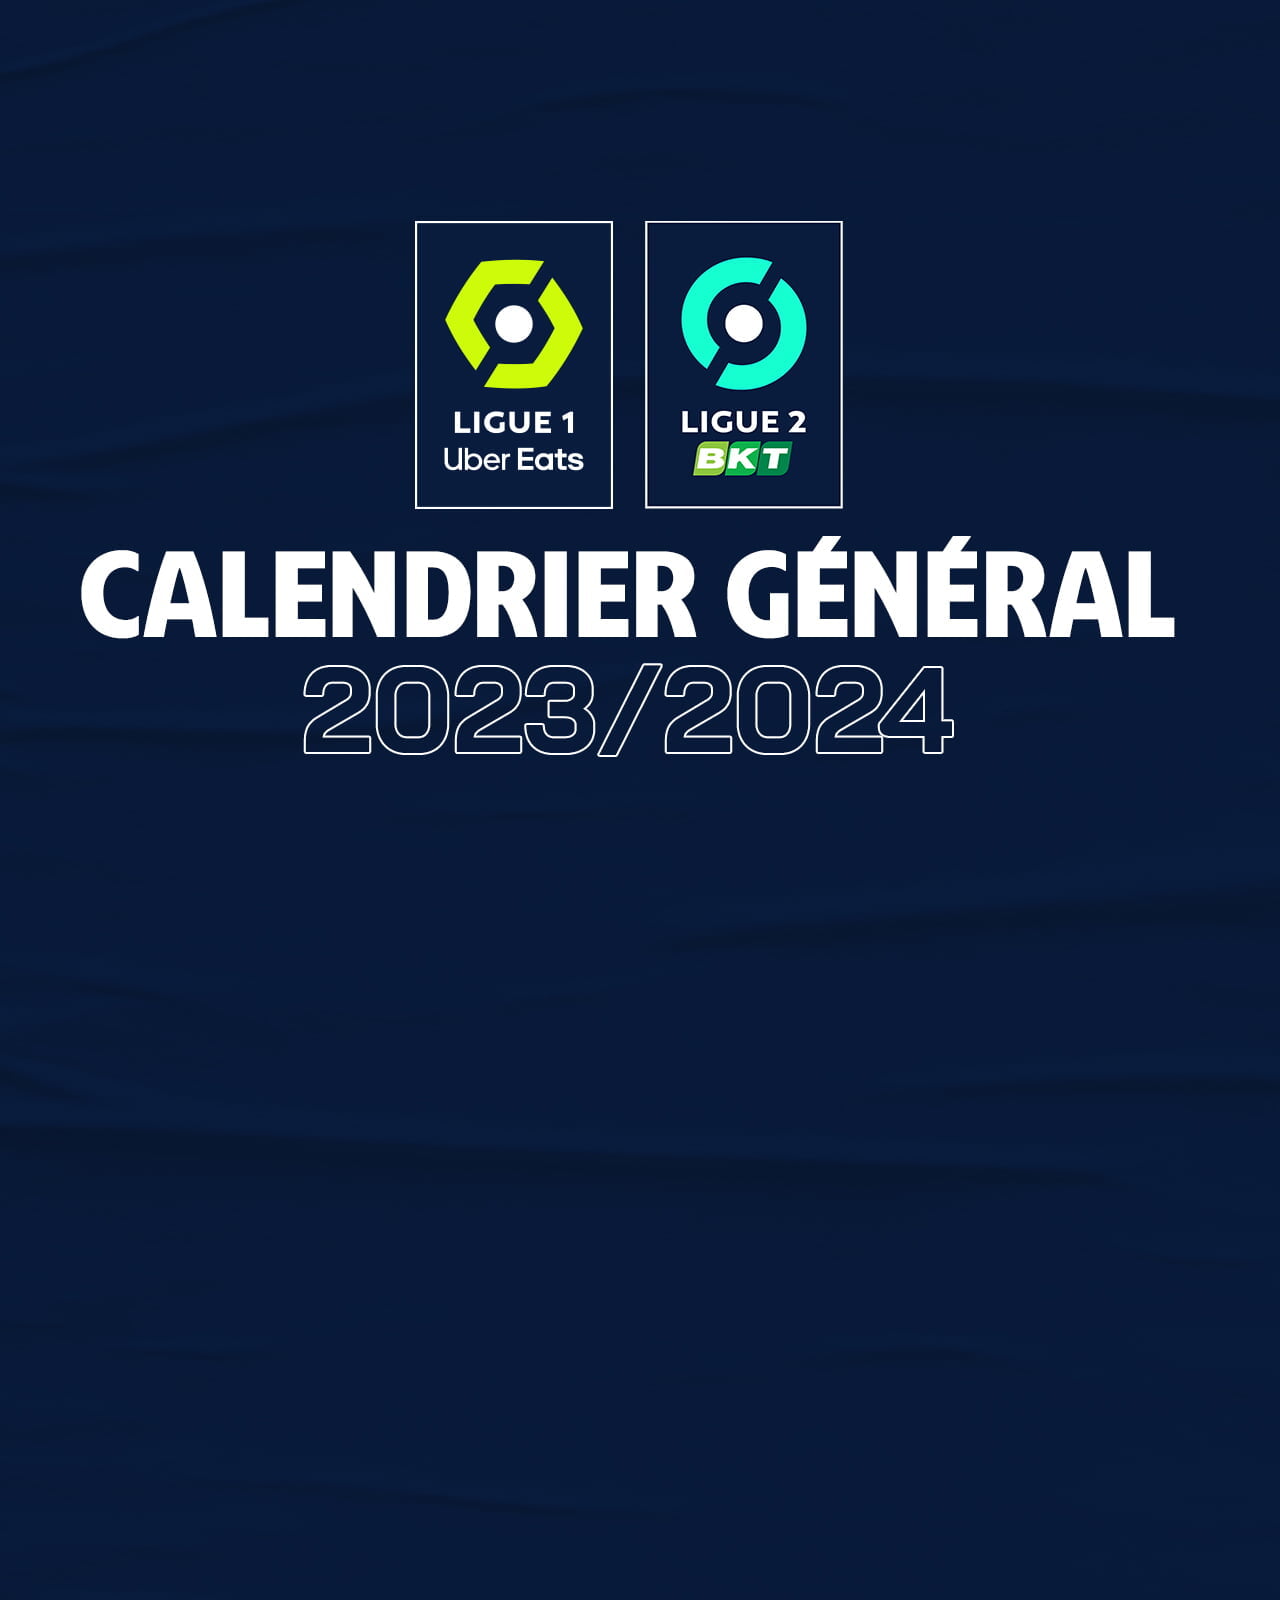 2023/24 Bundesliga fixtures released!